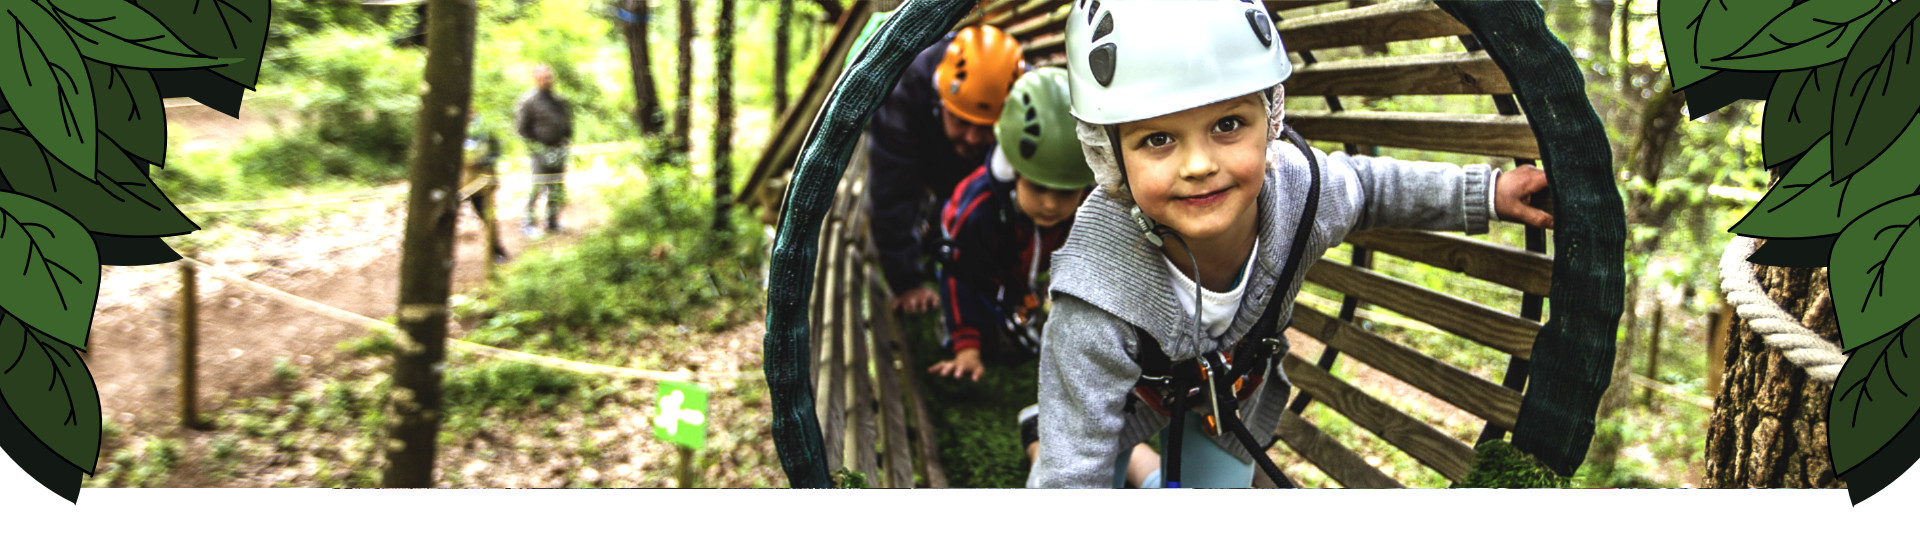 Enfants avec casques dans un tunnel surélevé en bois